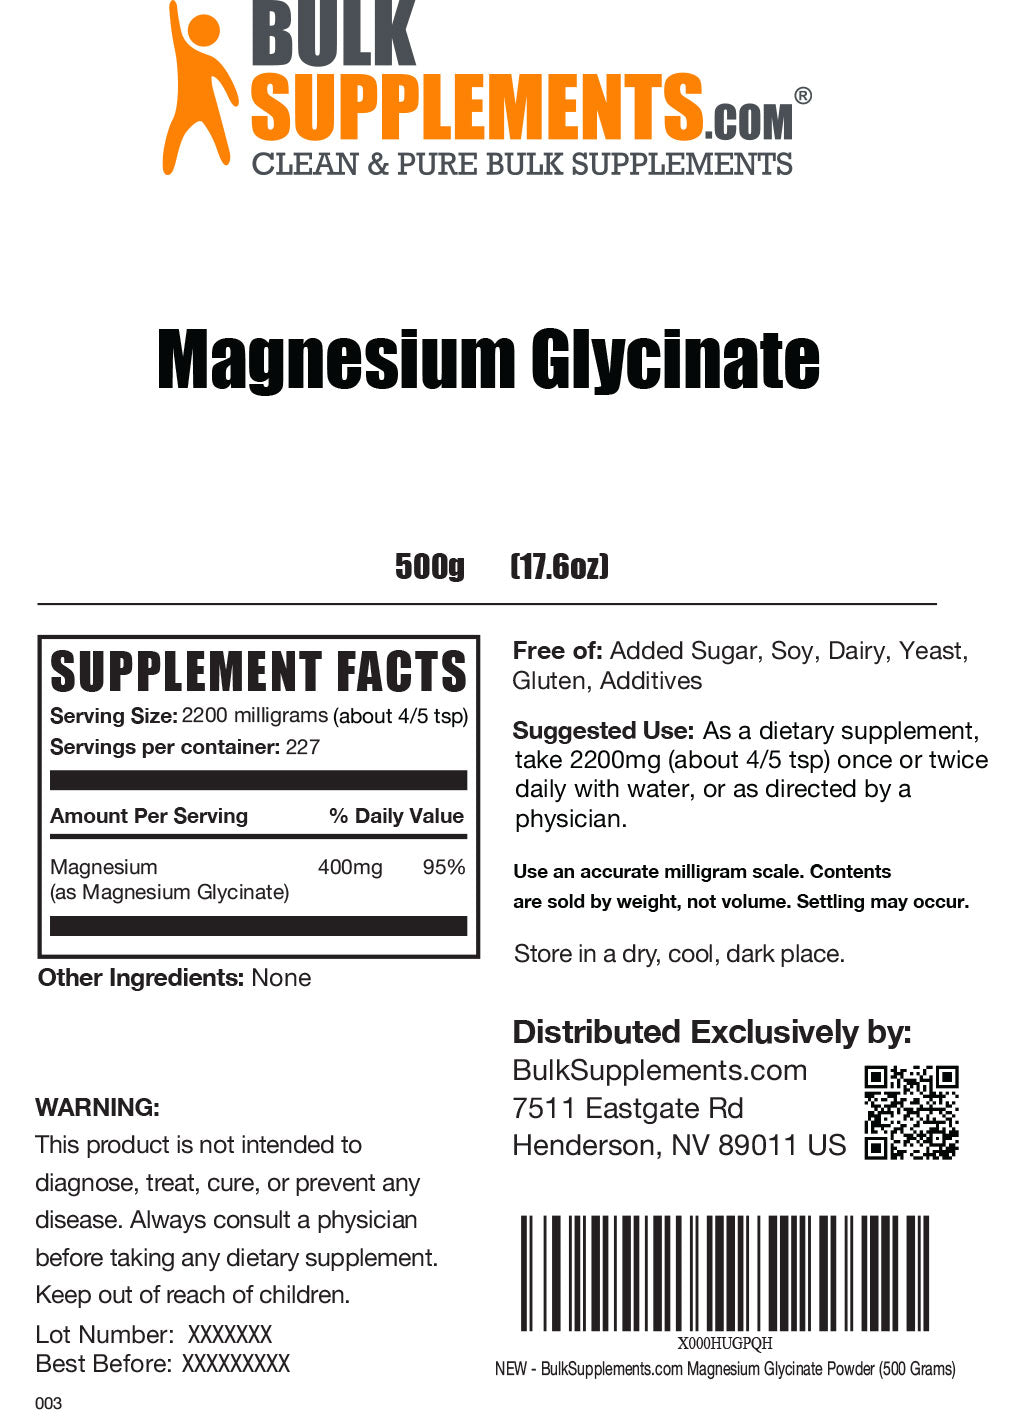 Magnesium glycinate powder label 500g